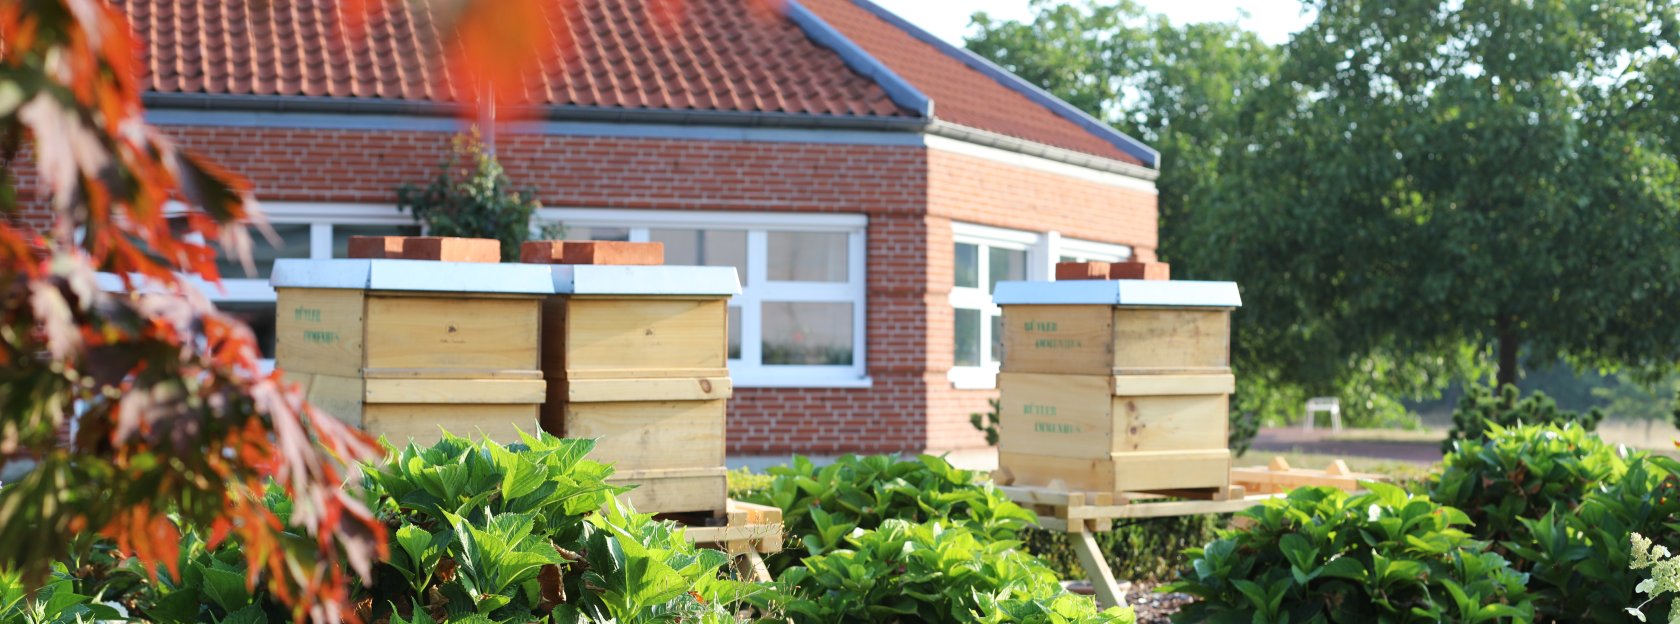 Firmensitz von Depesche mit Bienenstöcken